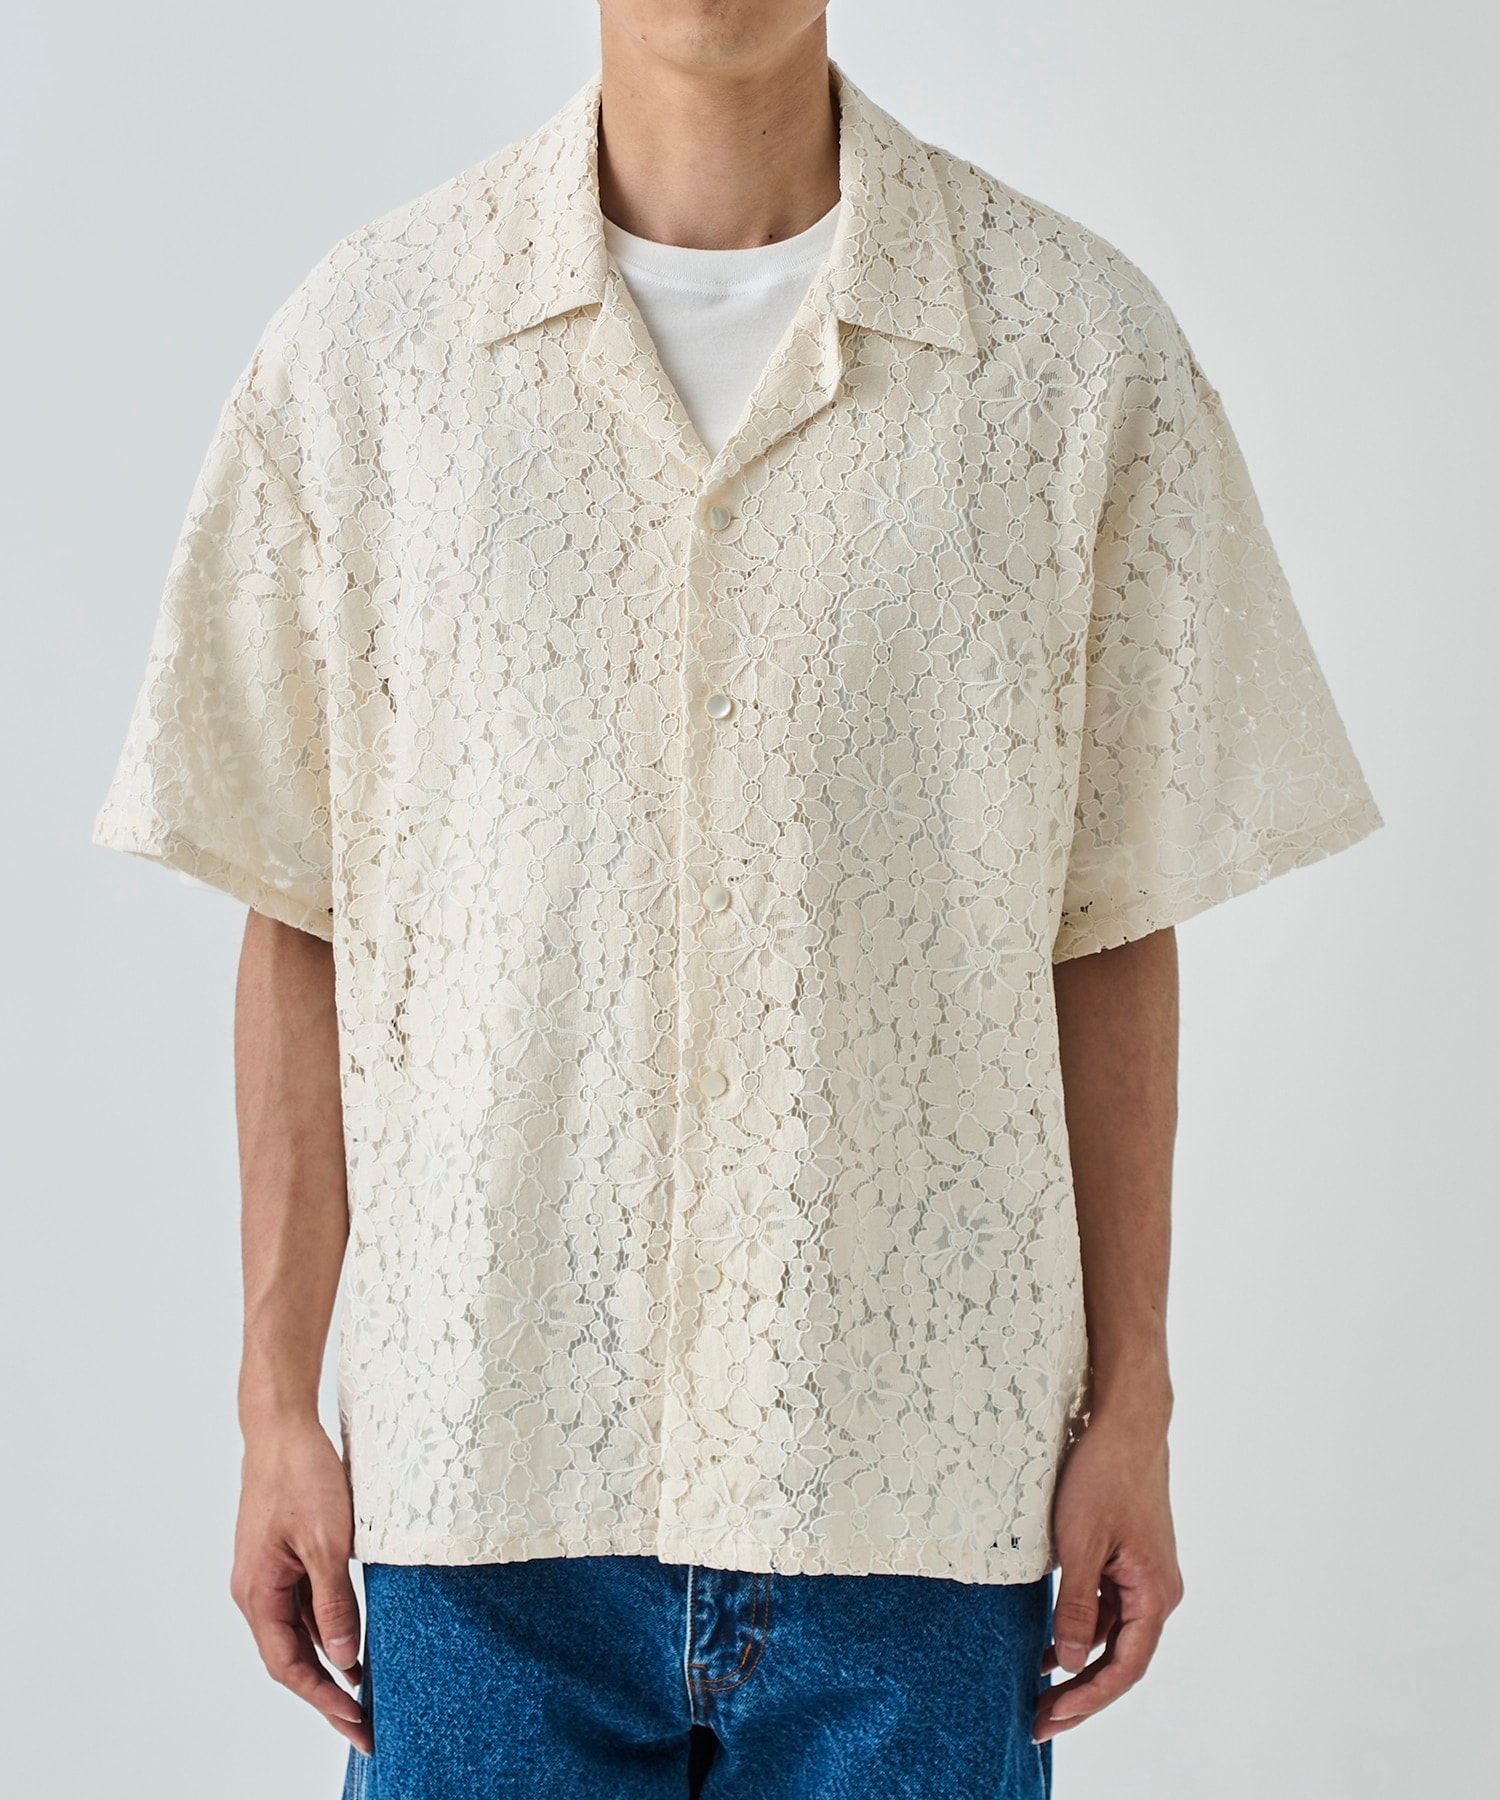 Aloha shirt-Flower lace superNova.